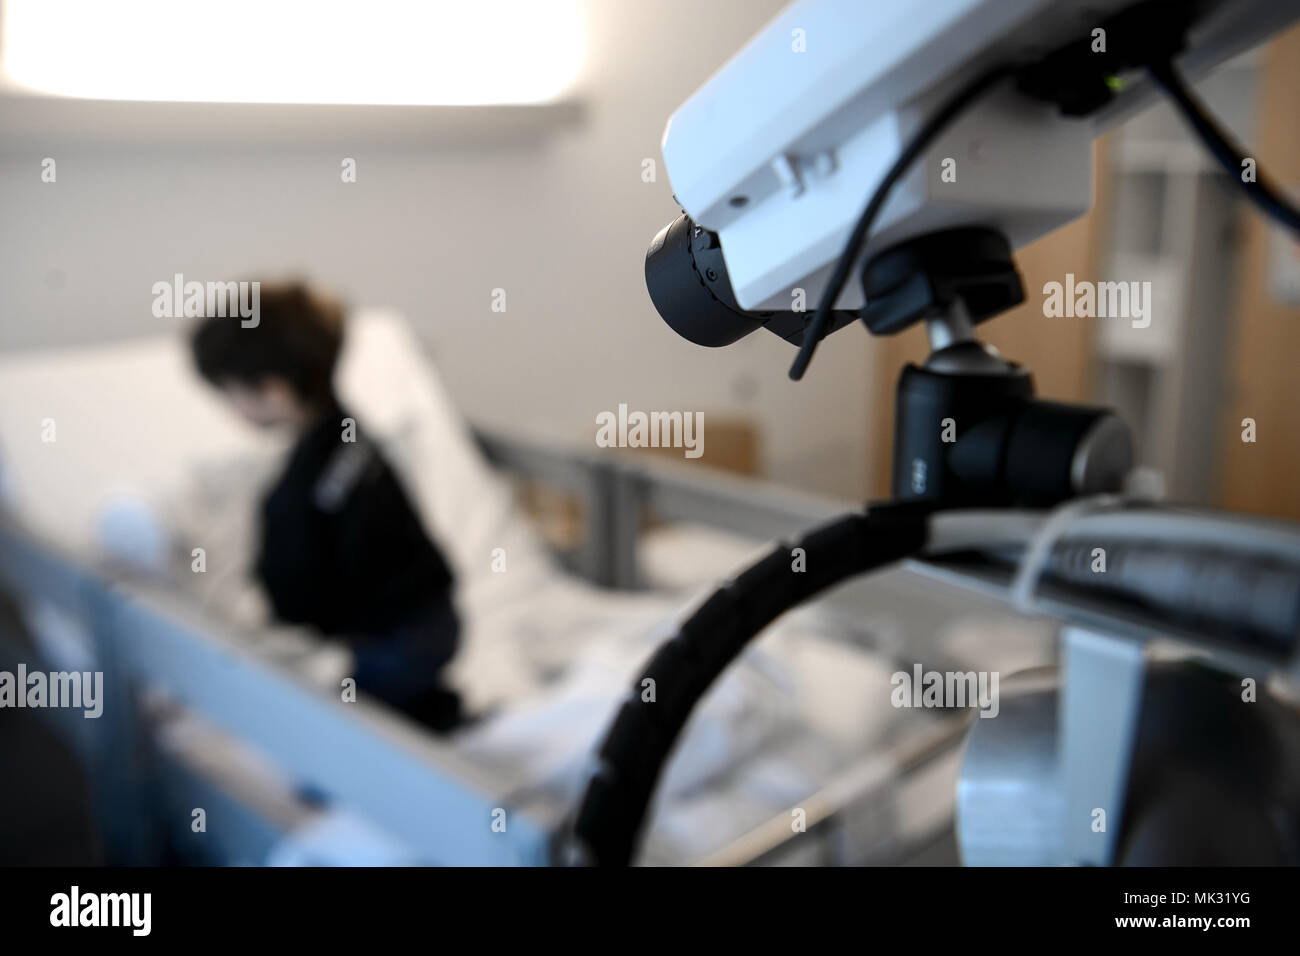 03 mayo de 2018, en Stuttgart, Alemania: una cámara de vigilancia del sueño films el paciente Nico cama de Hospital Olga. Stuttgart, tiene un laboratorio del sueño para niños desde